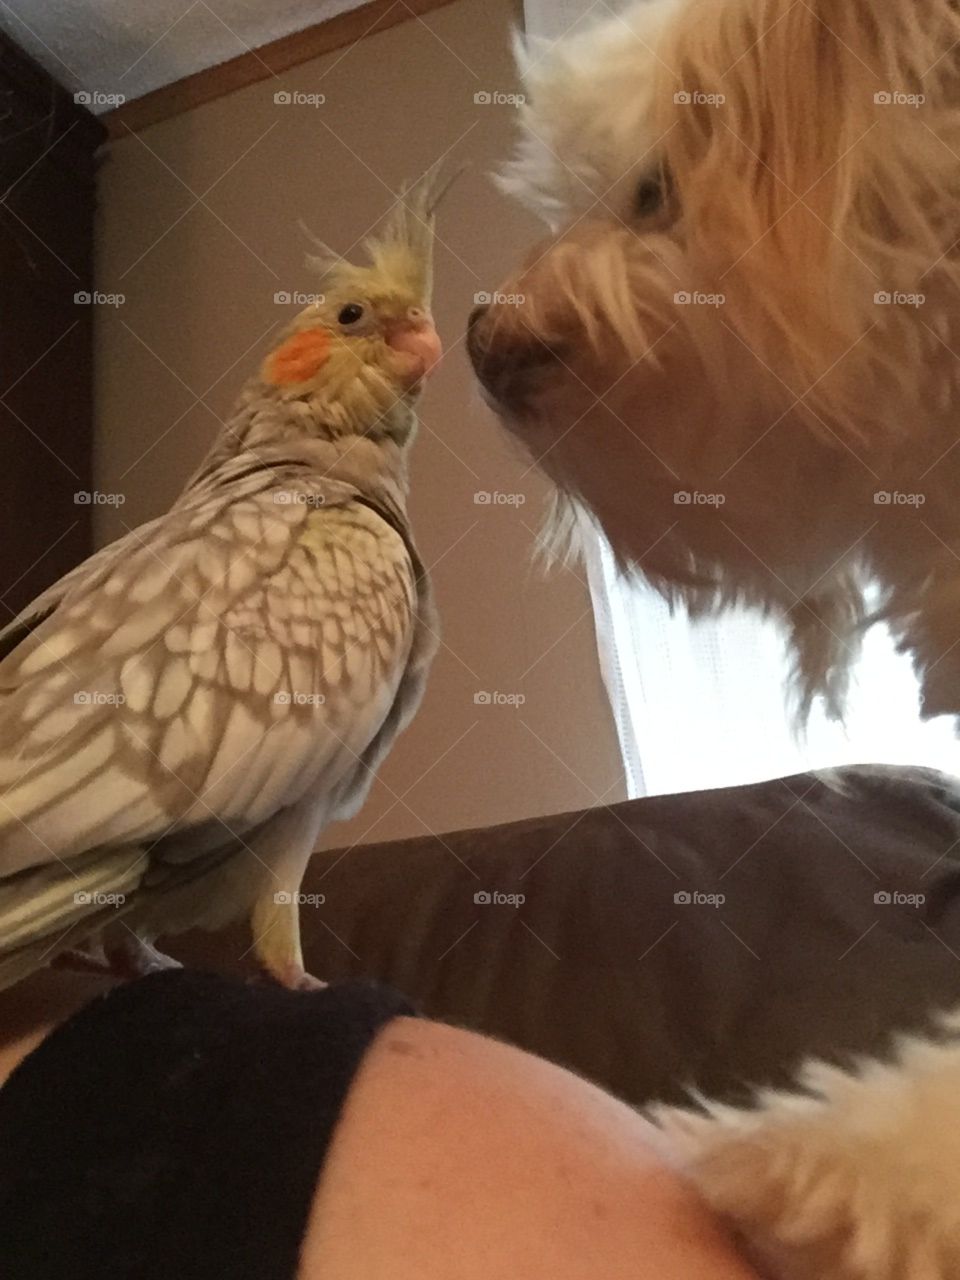 Dog and bird meet